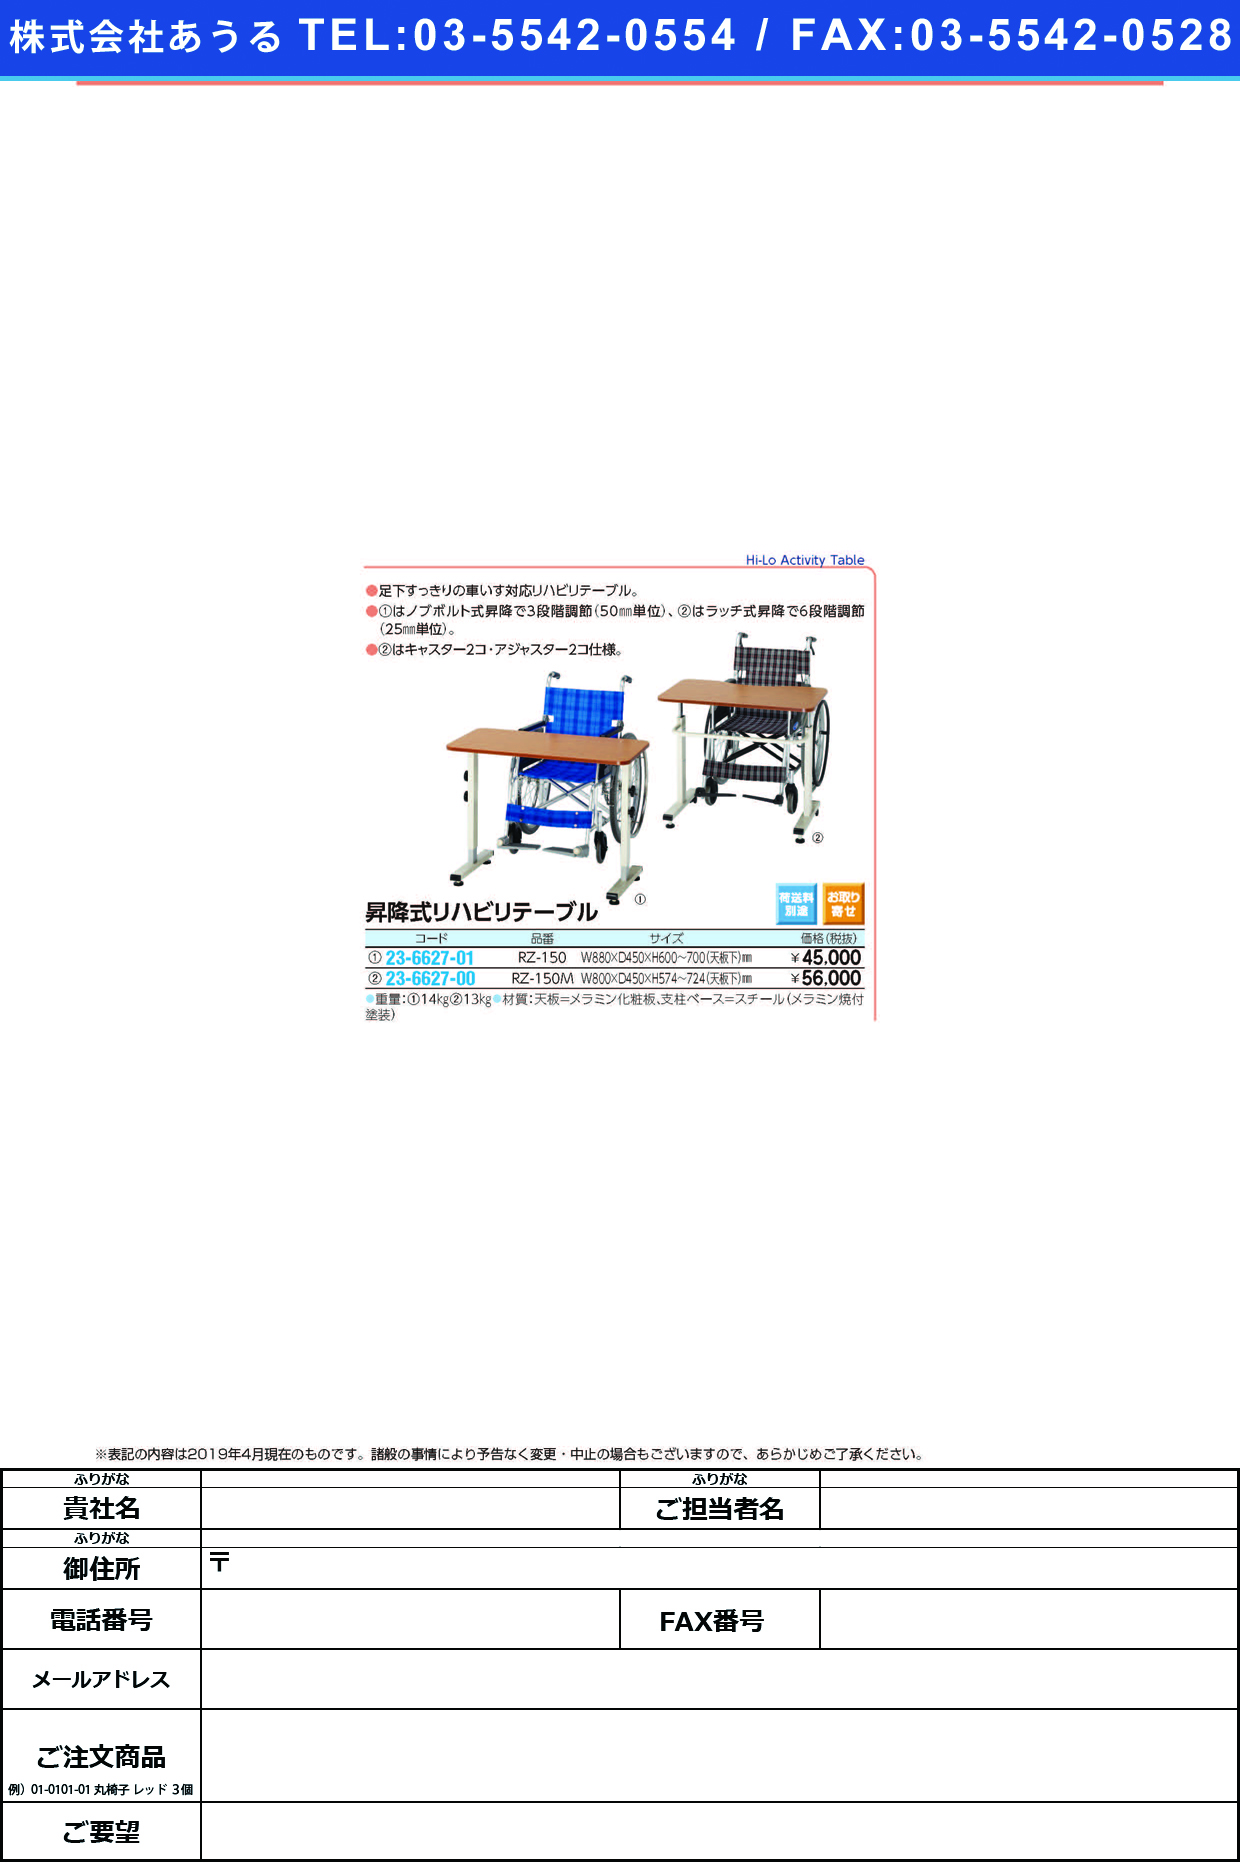 (23-6627-01)昇降式リハビリテーブル RZ-150(W880XD450) ｼｮｳｺｳｼｷﾘﾊﾋﾞﾘﾃｰﾌﾞﾙ【1台単位】【2019年カタログ商品】